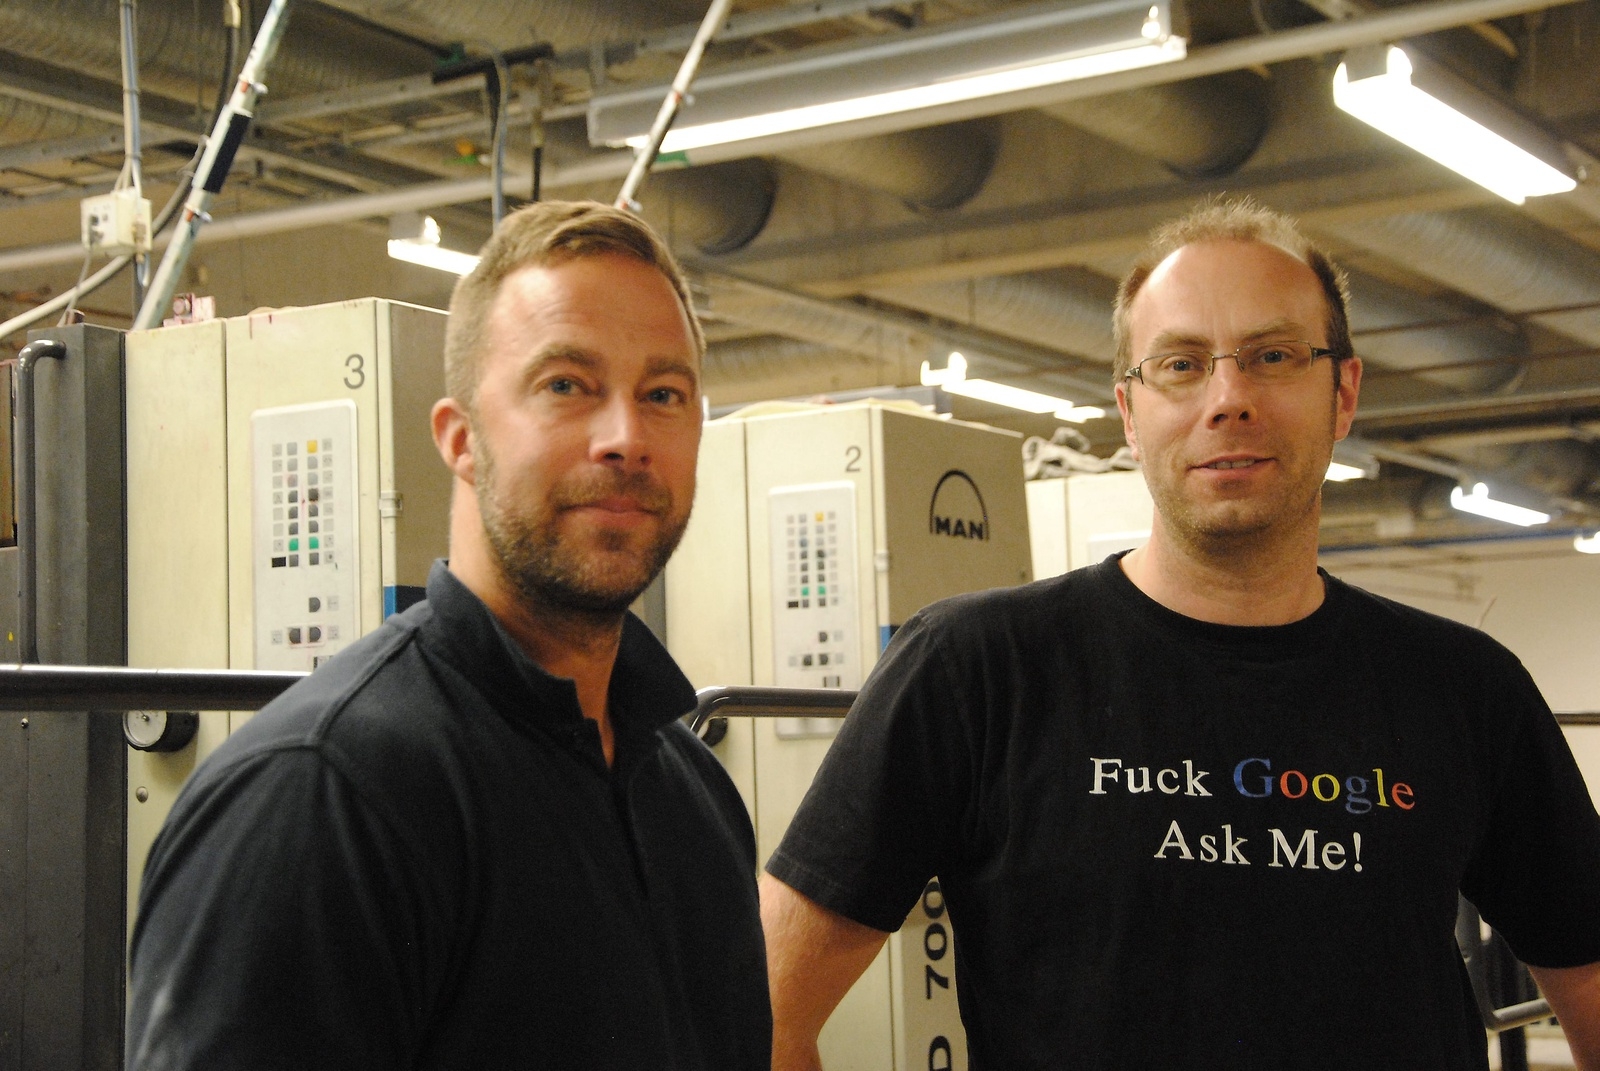 Från vänster till höger: Rickard Andersson och Fredrik Svensson.